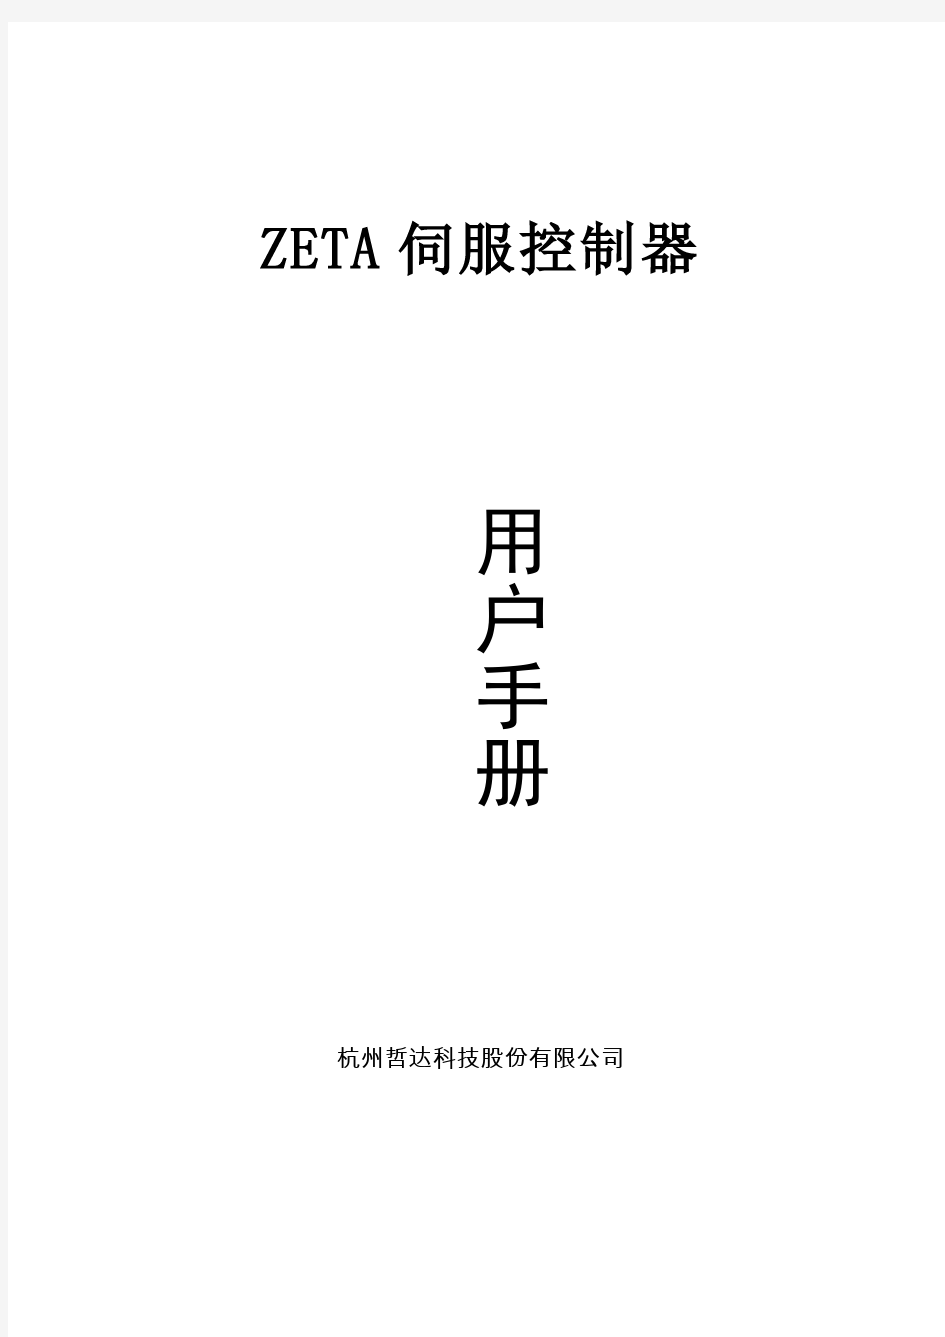 ZETA伺服控制器用户使用手册_TRT